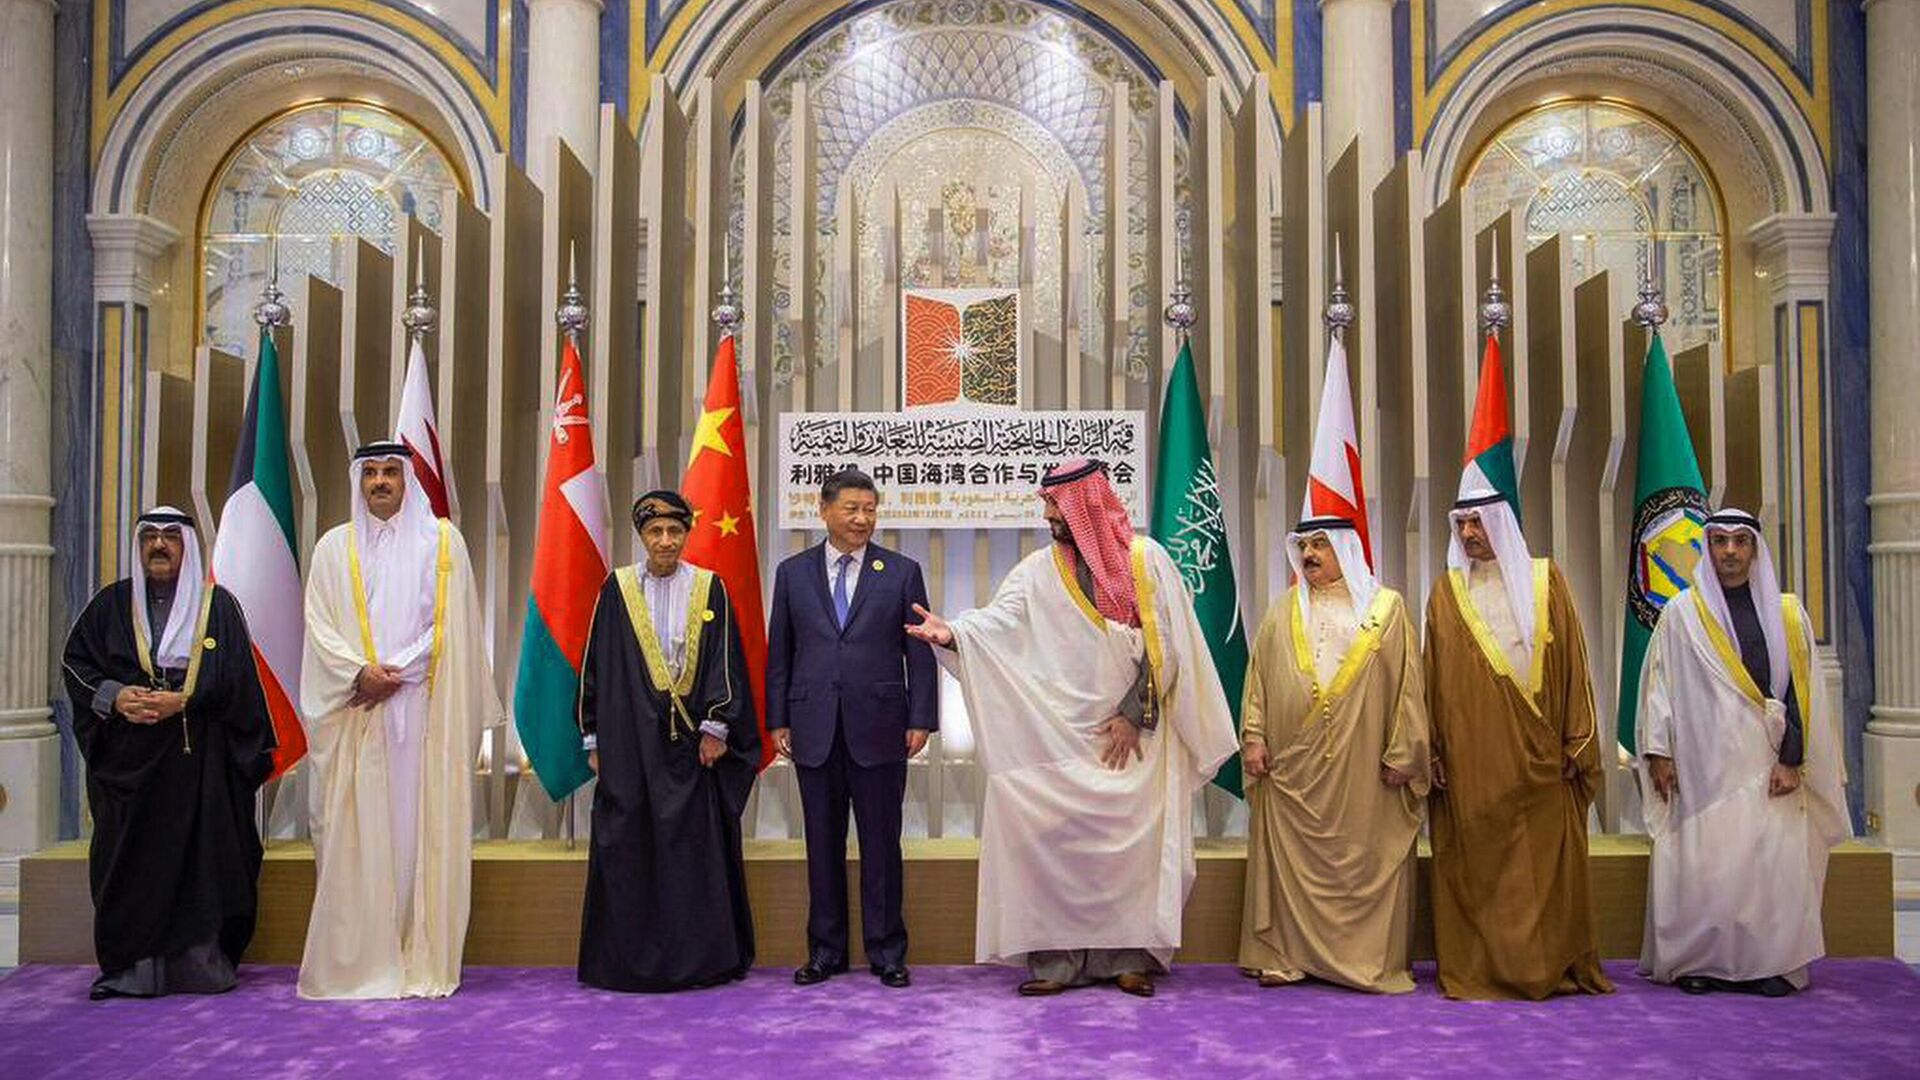 Председатель КНР Си Цзиньпин и наследный принц Саудовской Аравии Мухаммед бен Салман во время встречи в Эр-Рияде. 9 декабря 2022 года - ИноСМИ, 1920, 05.08.2023